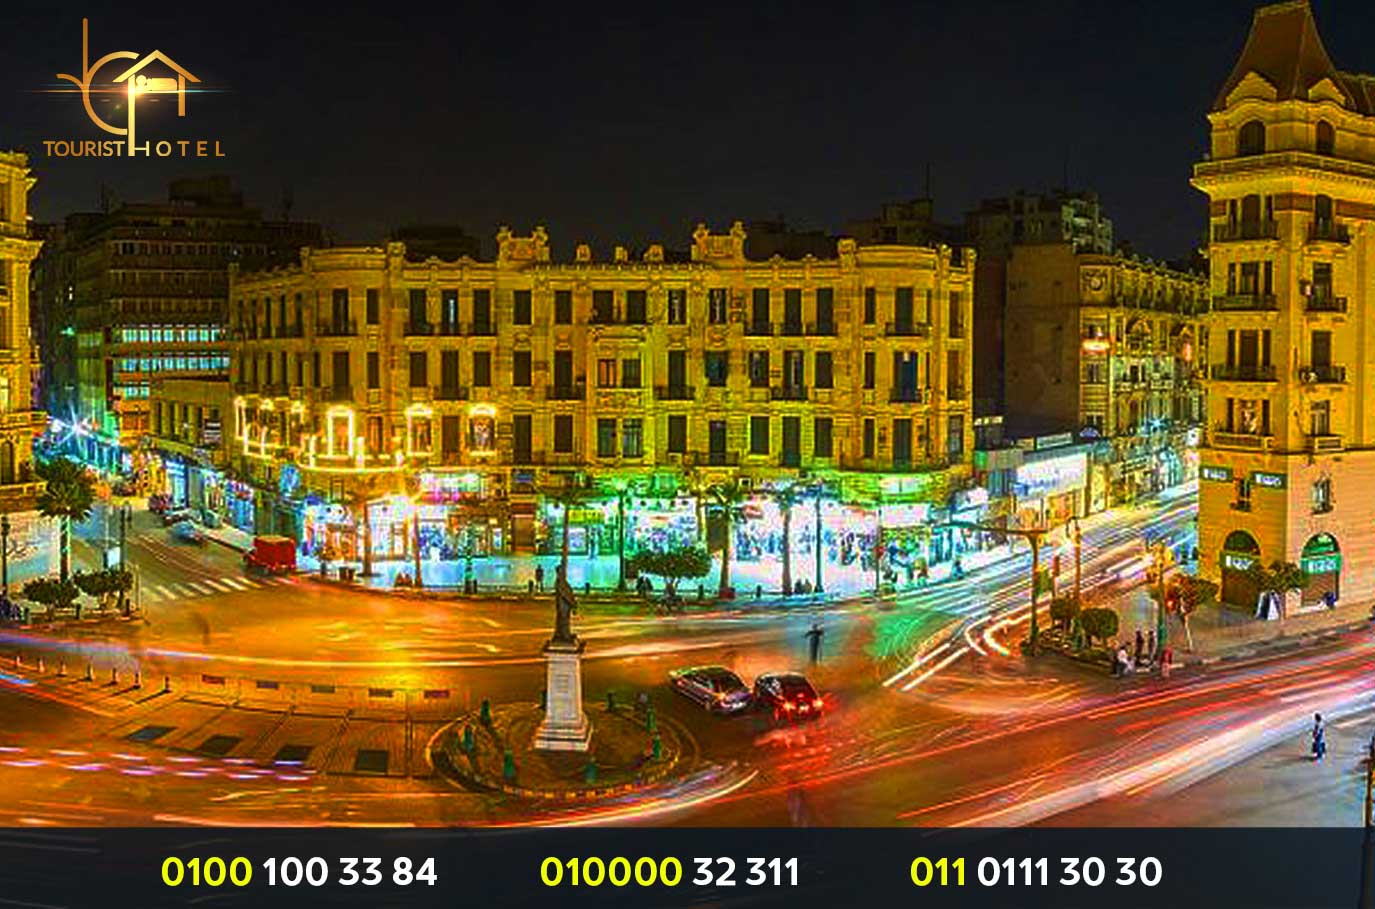 افضل فنادق وسط البلد - ارخص فندق في القاهرة وسط البلد